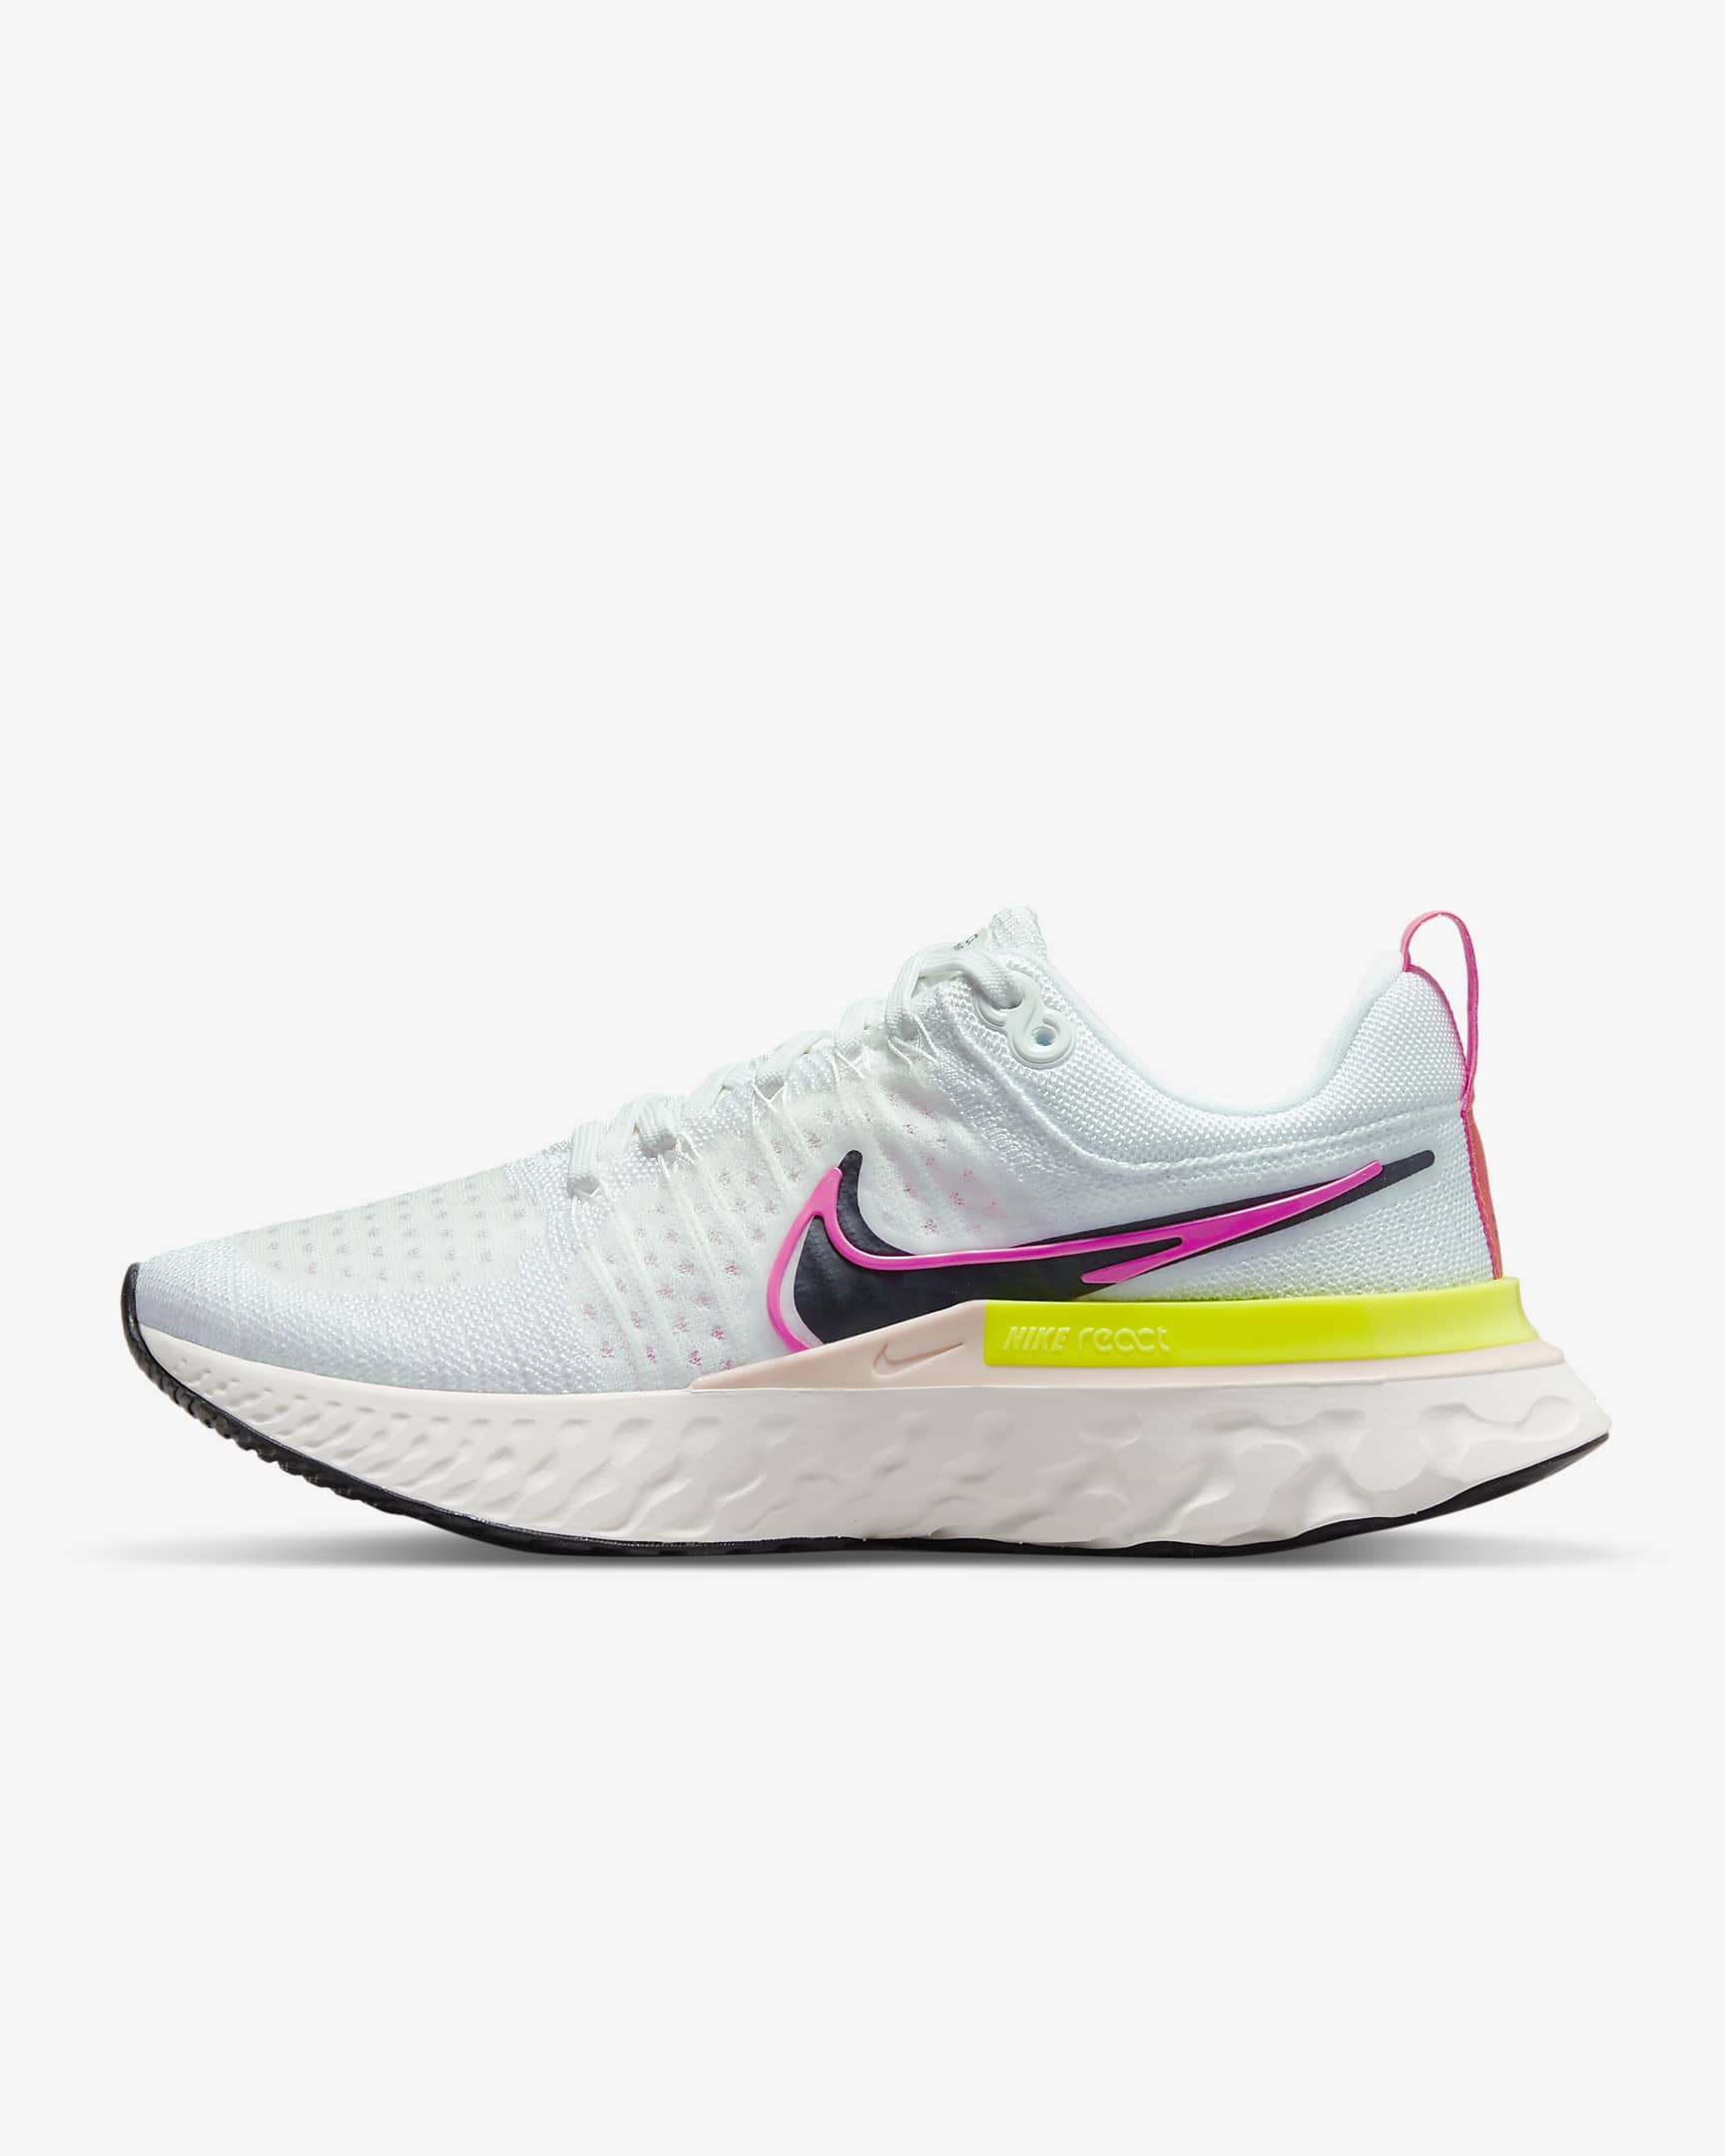 Nike React Infinity Run Flyknit 2 Women's Road Running Shoes. Nike SG